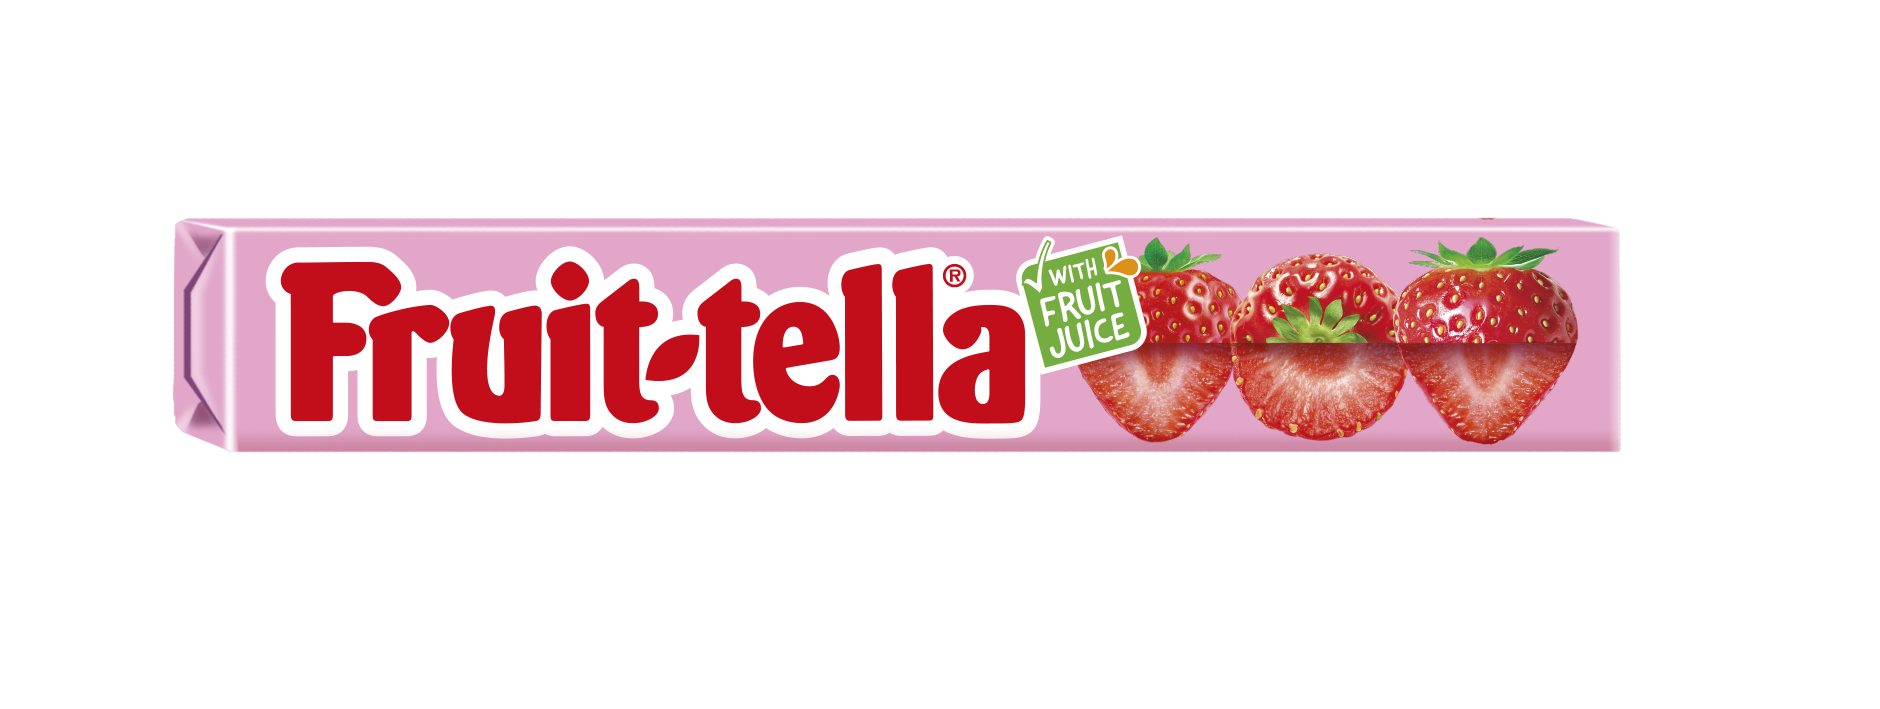 Fruittella unveils new look and reduces plastic across portfolio